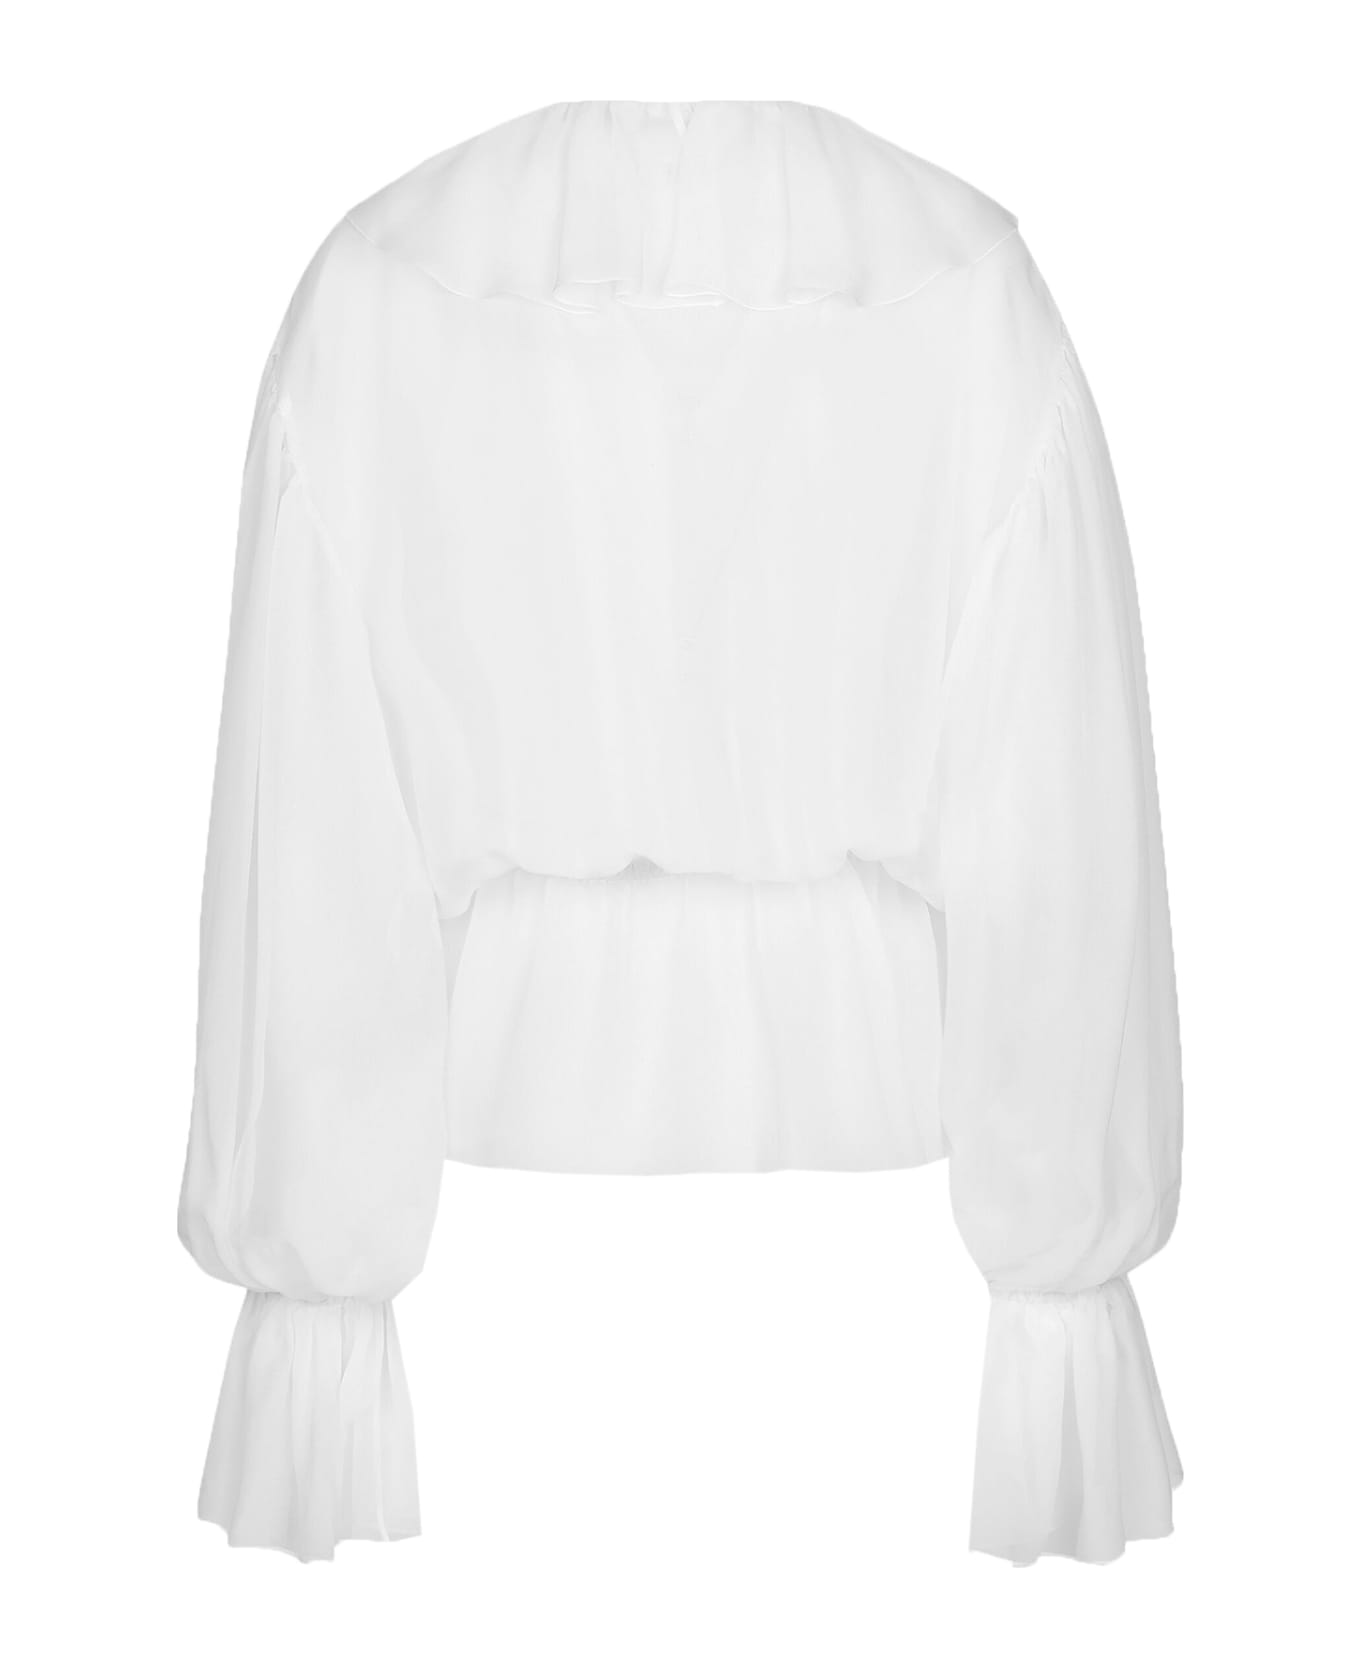 Dolce & Gabbana Chiffon Blouse With Ruffles - White